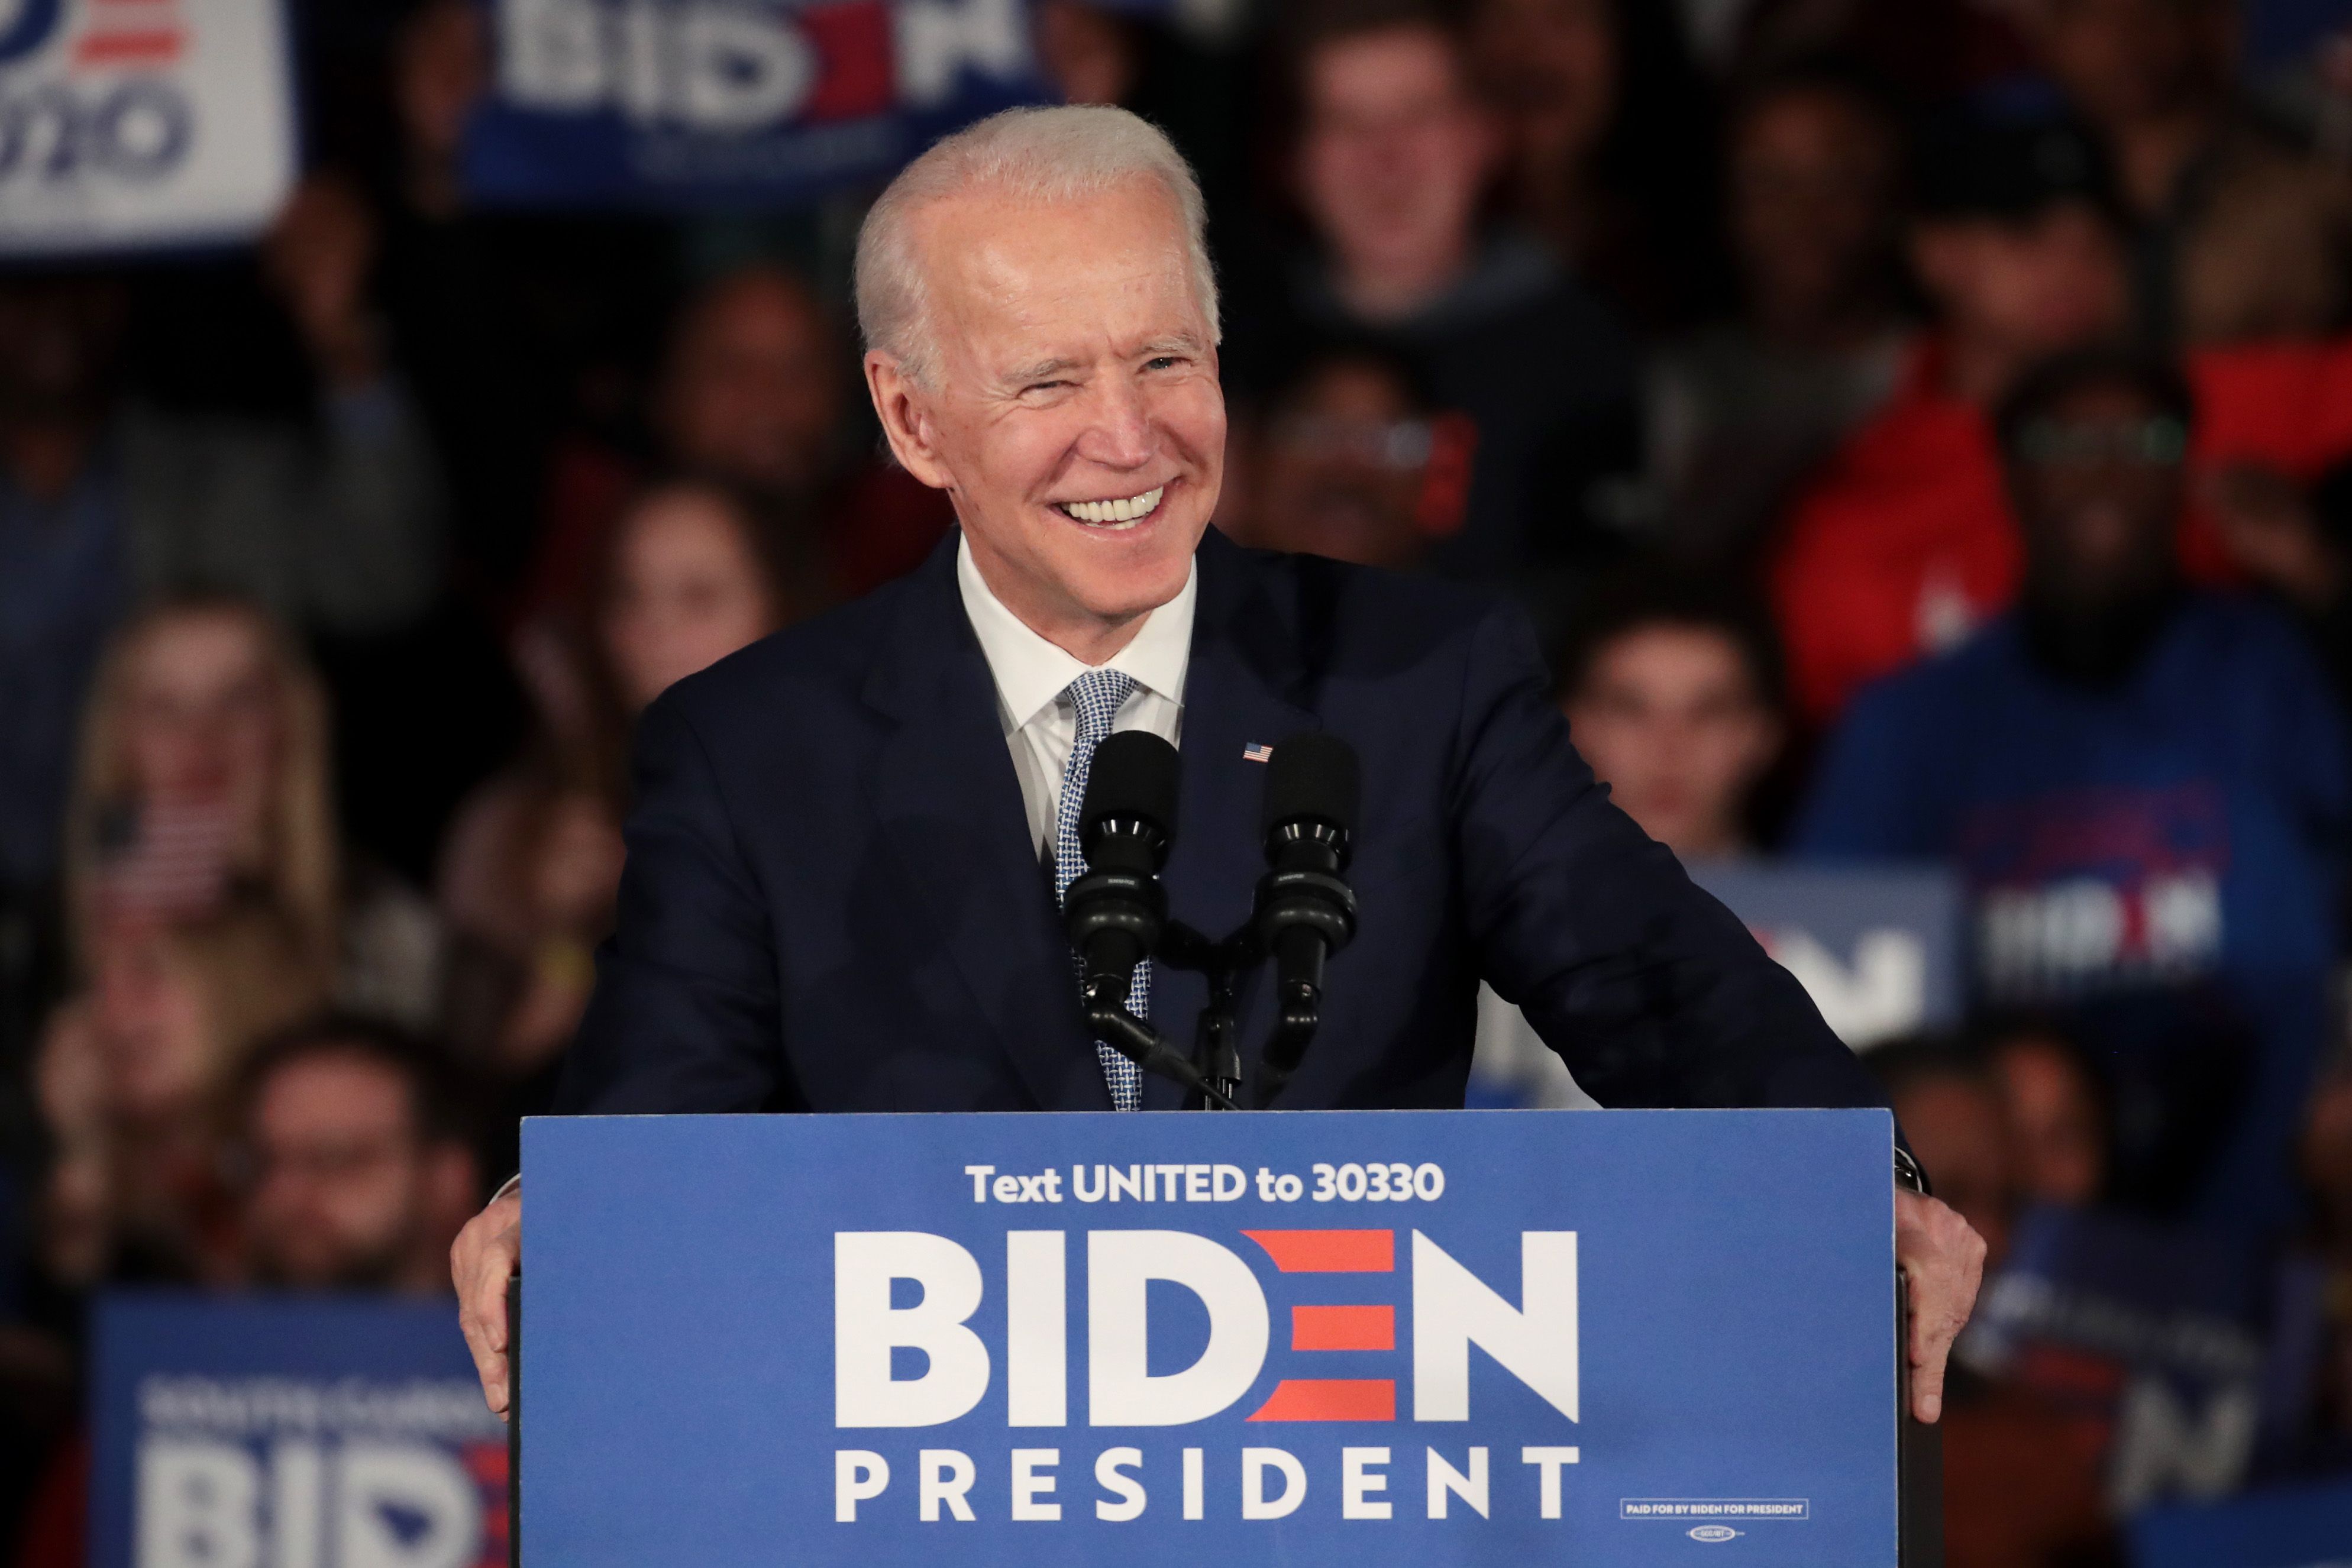 Biden Net 2021 - How Did Biden Earn His Money?